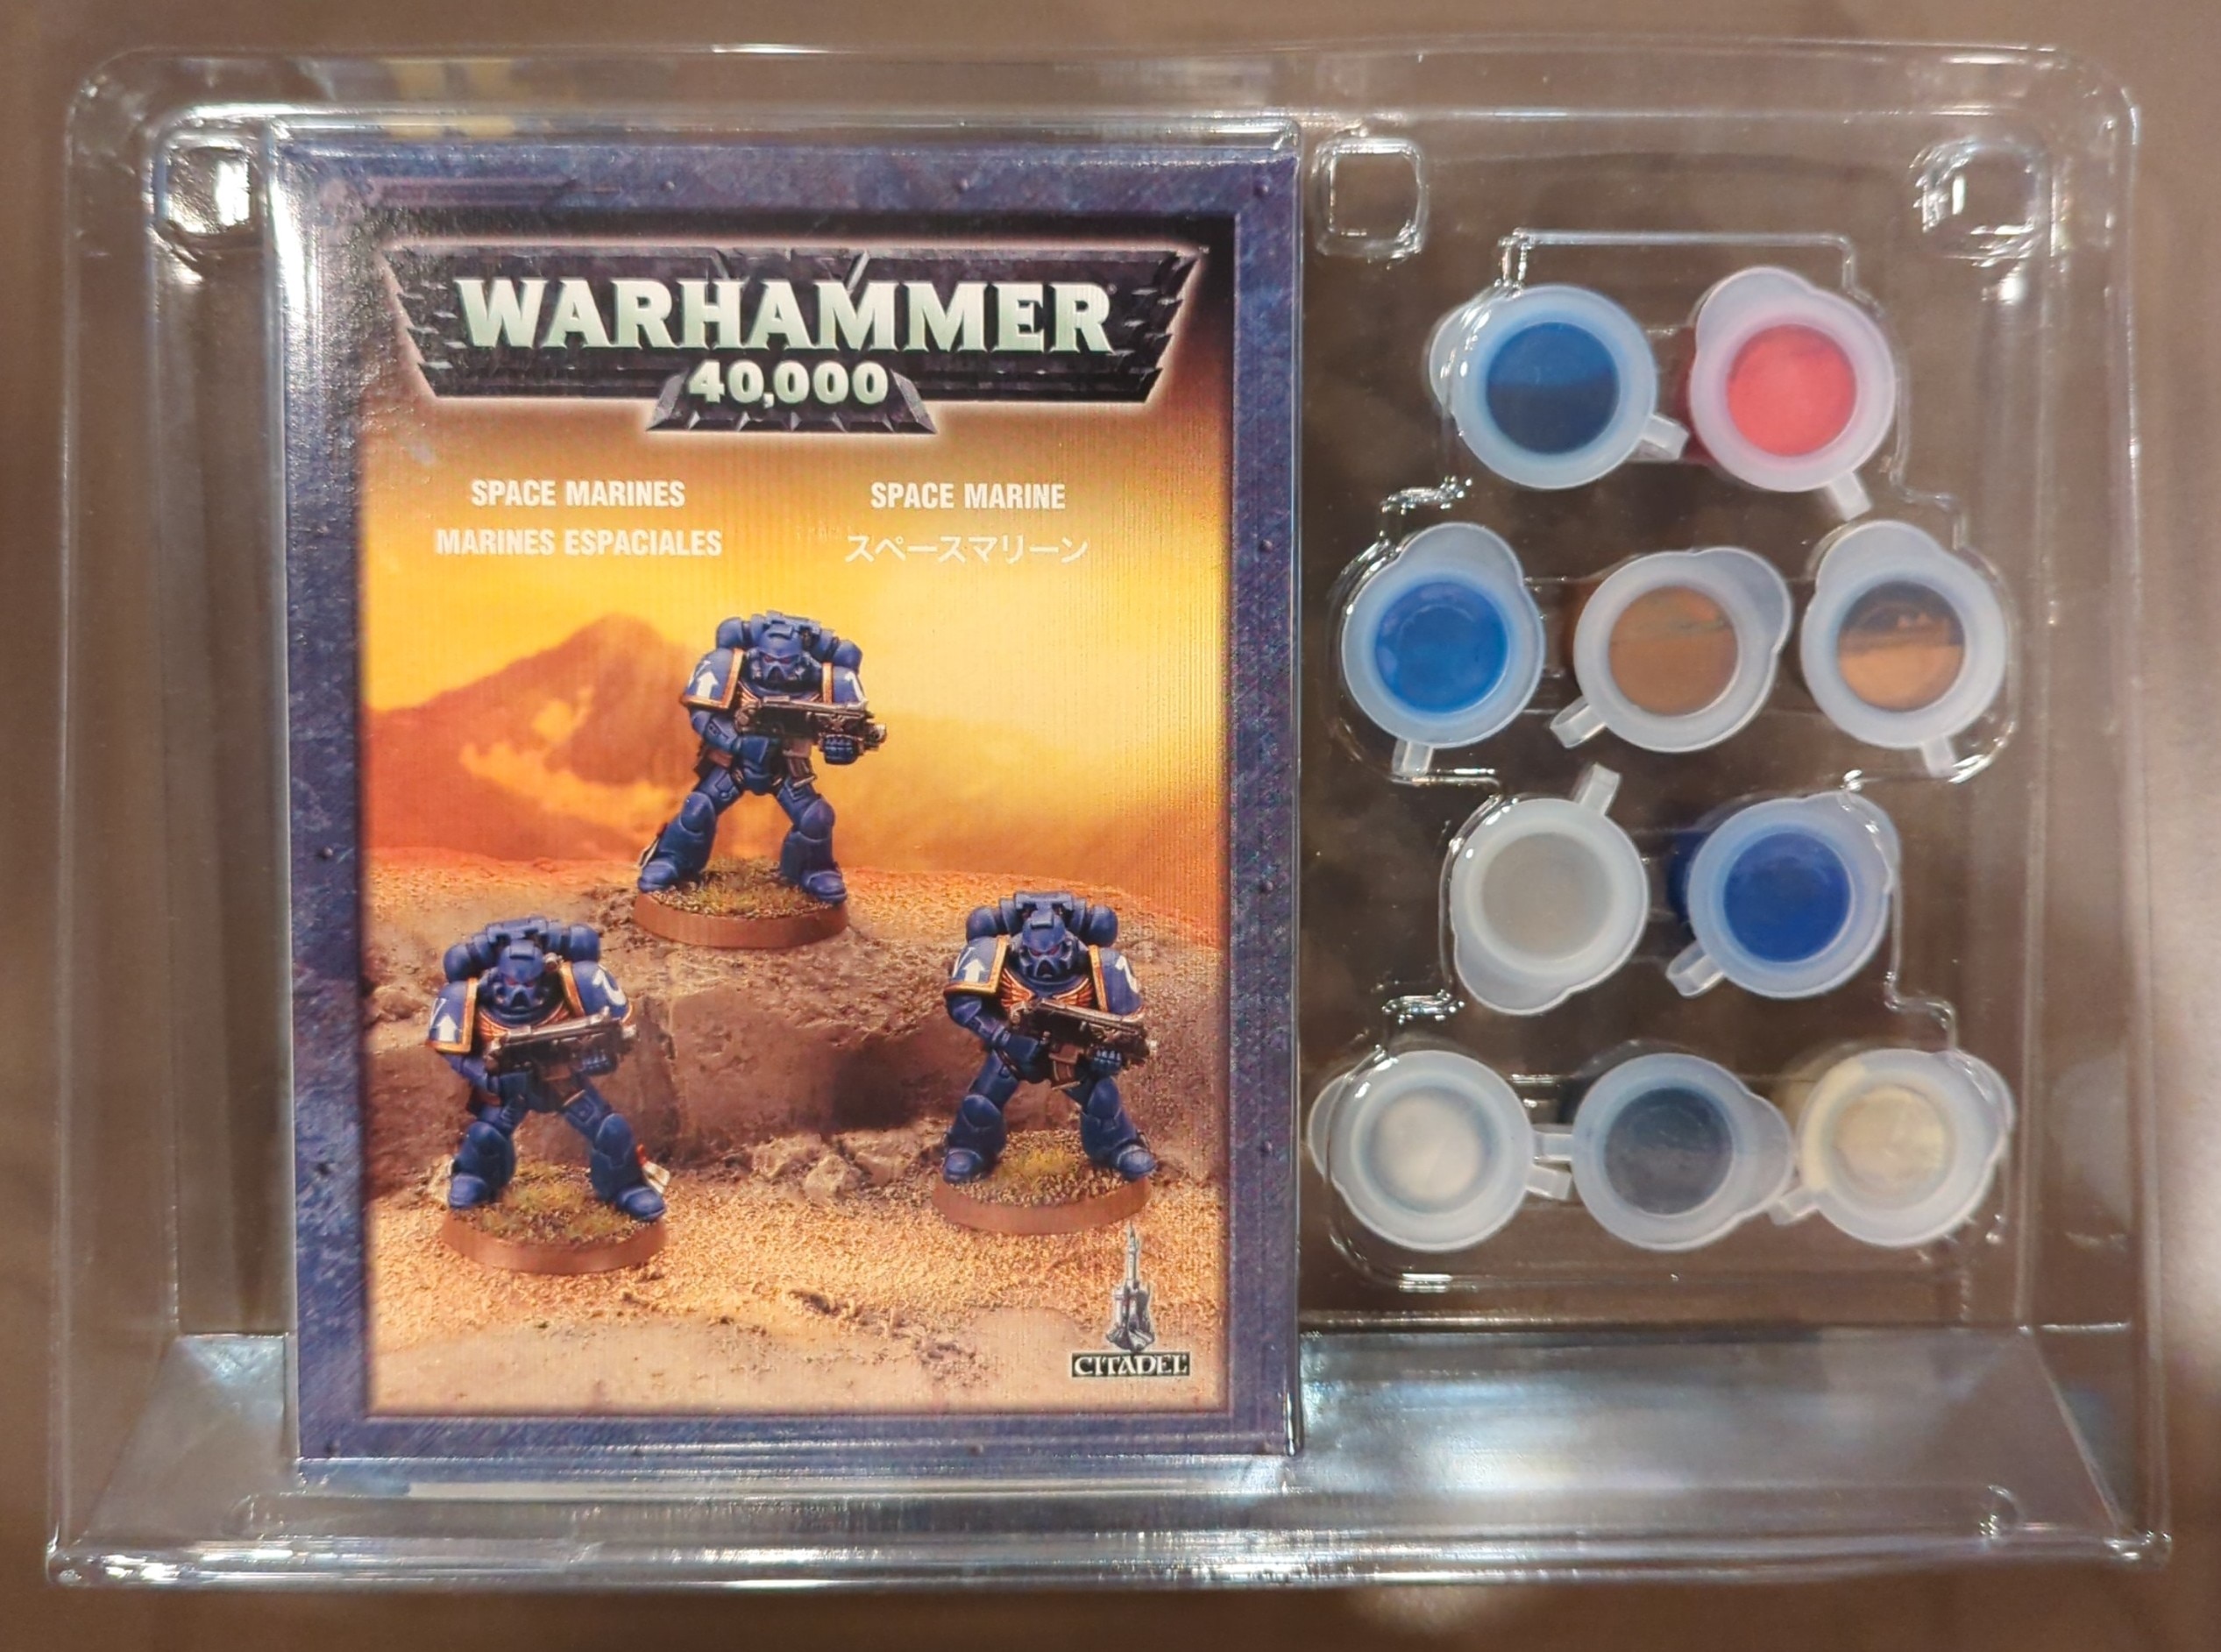 Warhammer 40K Space Marine Paint Set